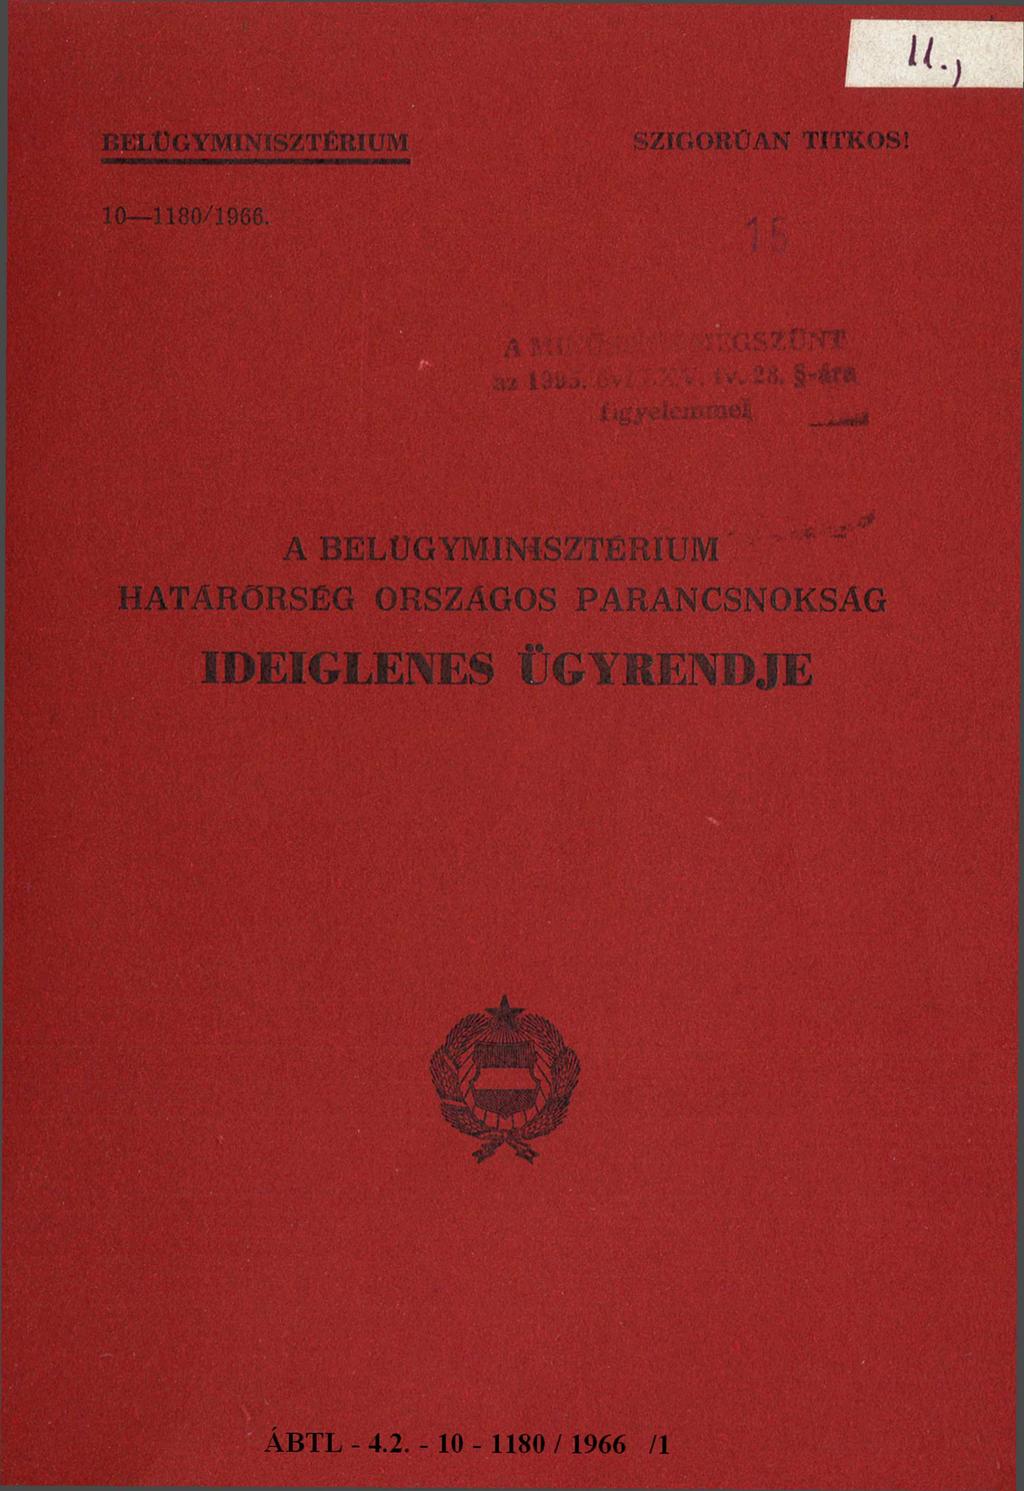 BELÜGYMINISZTÉRIUM SZIGORÚAN TITKOS! 10-1 180/1966.